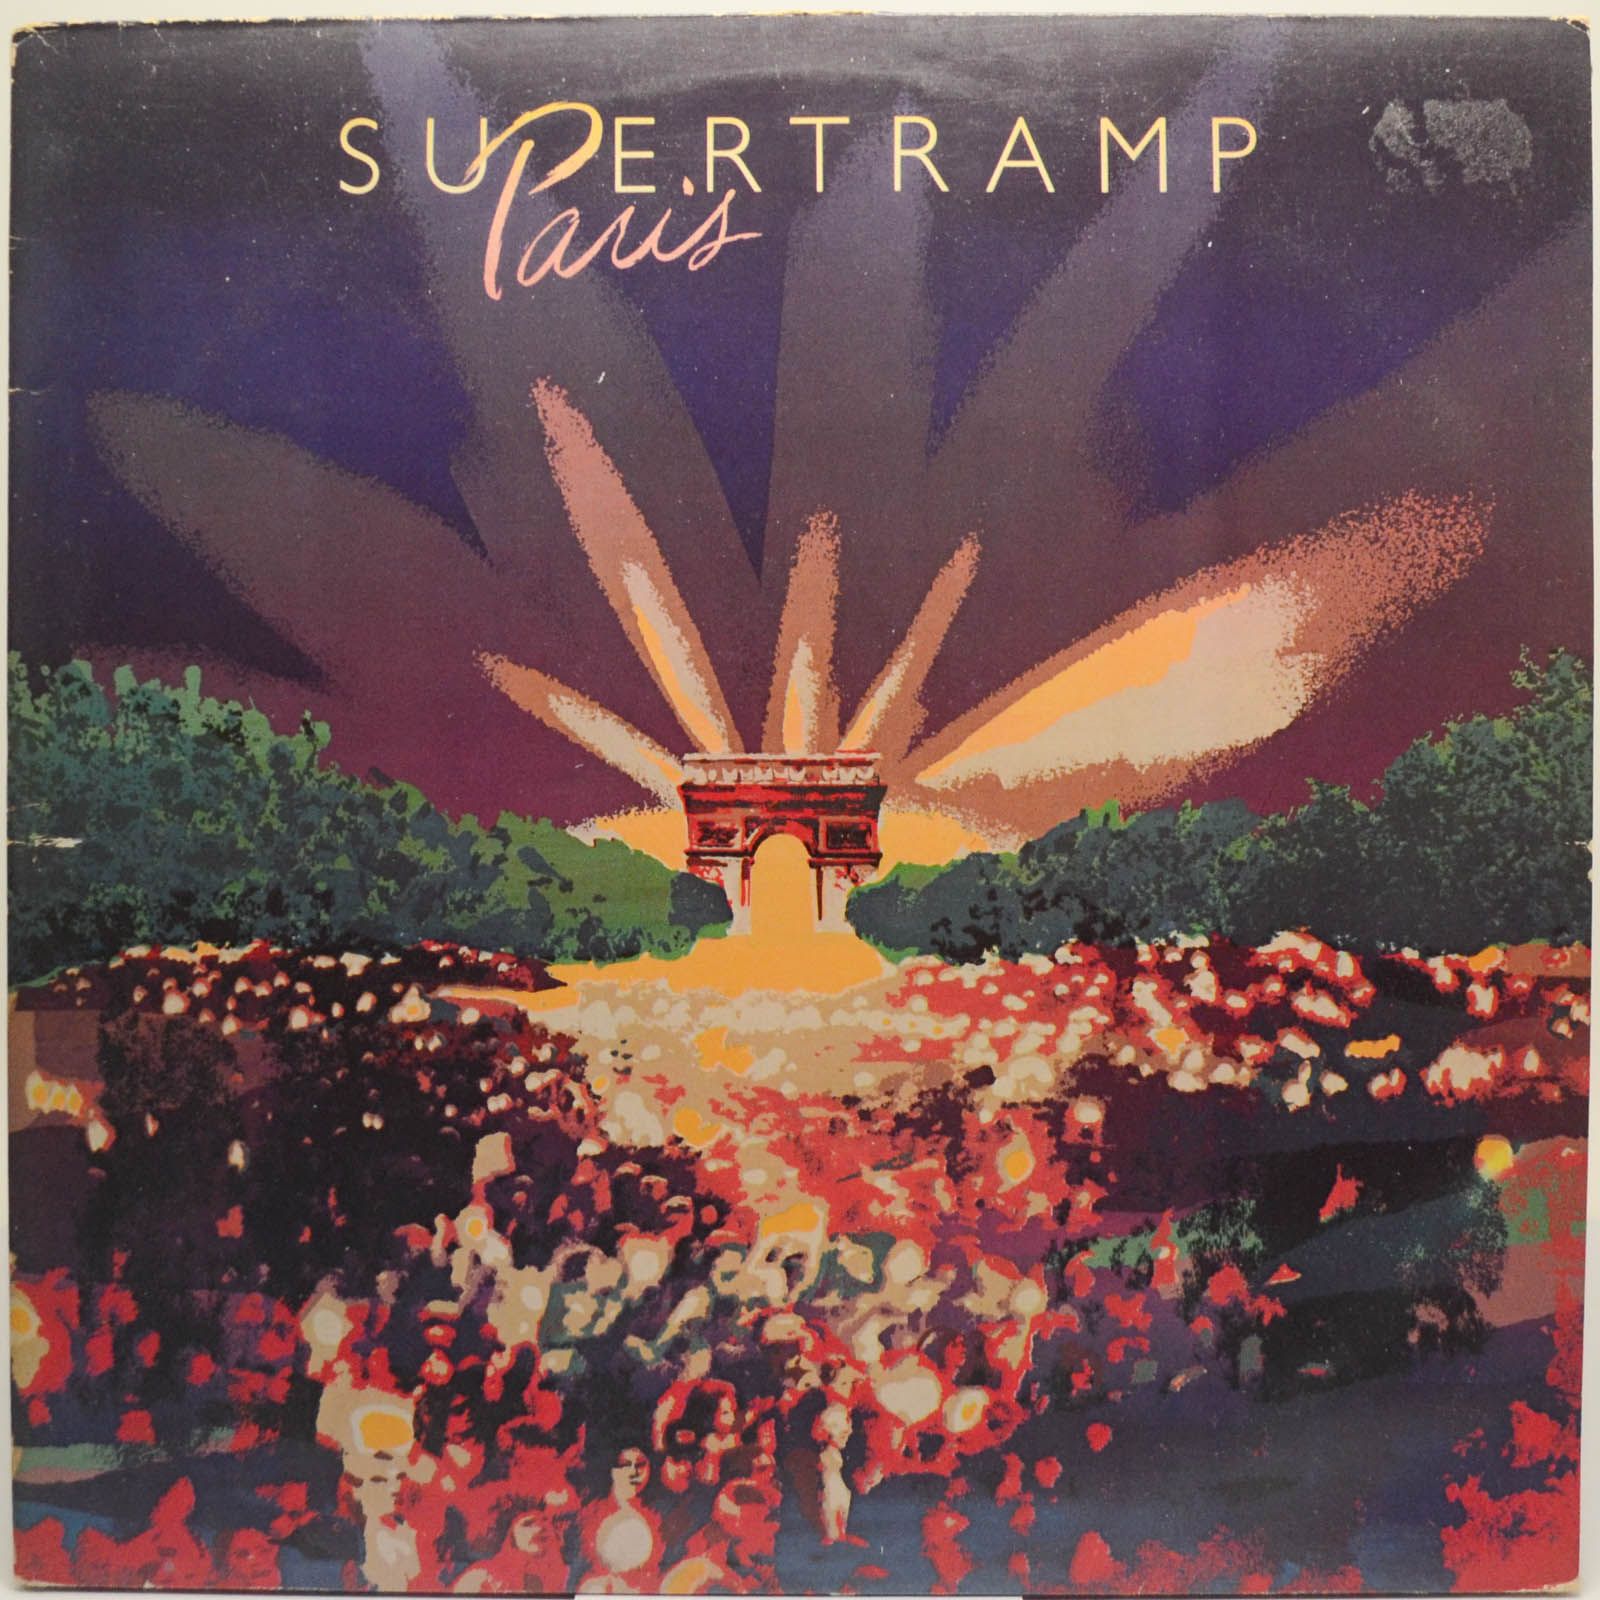 Supertramp — Paris (2LP), 1980